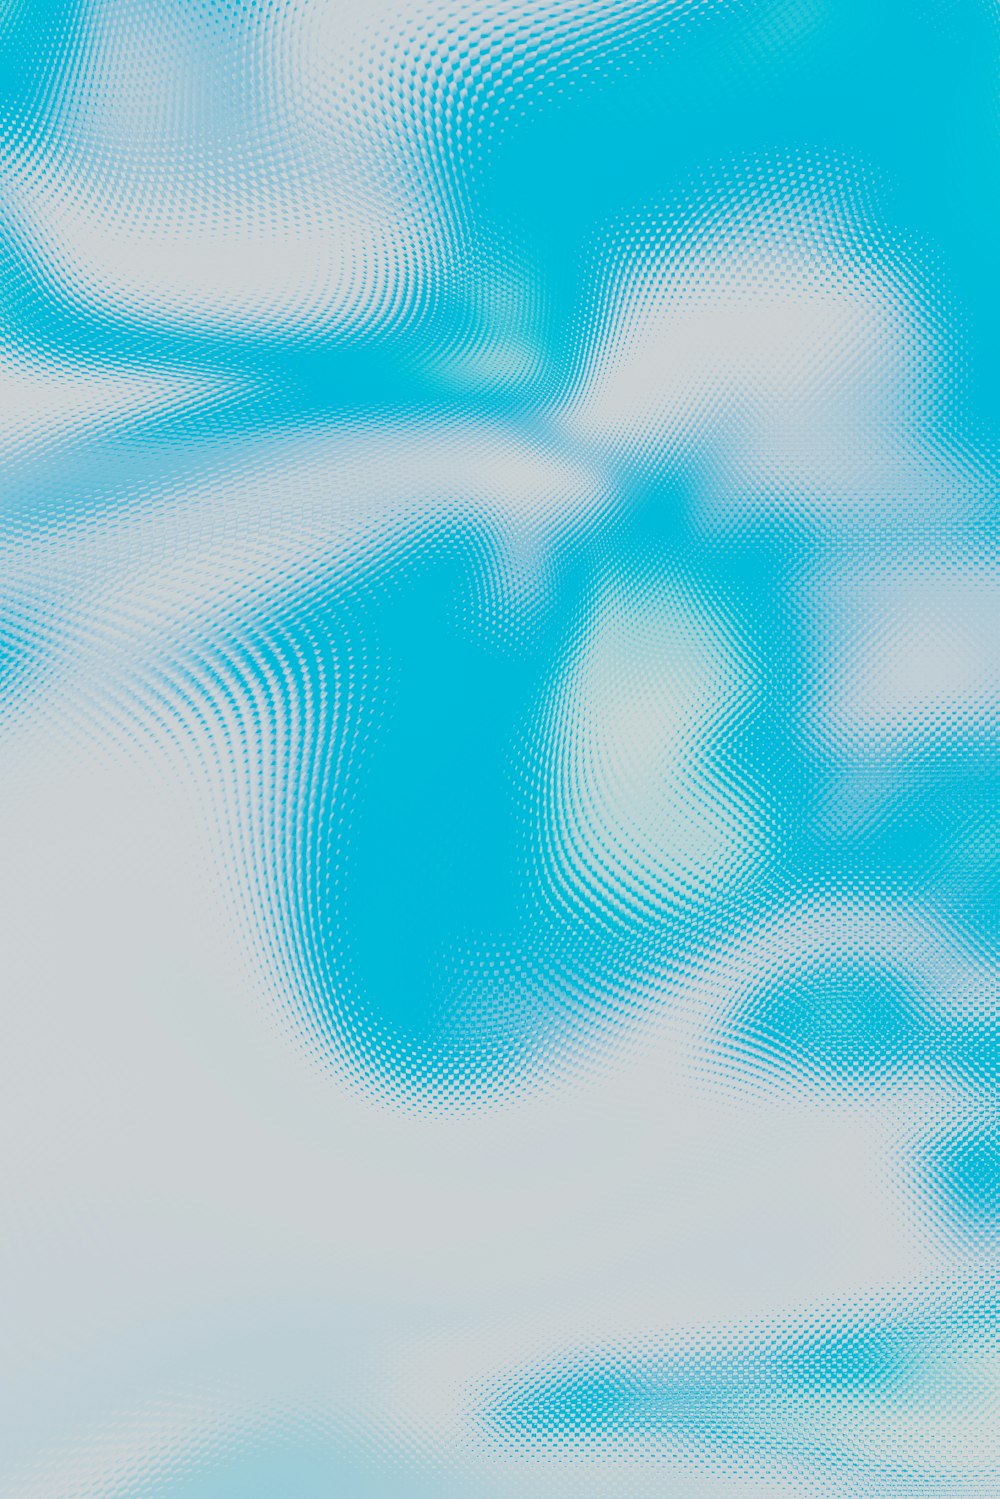 Un'immagine sfocata di un cielo blu con le nuvole